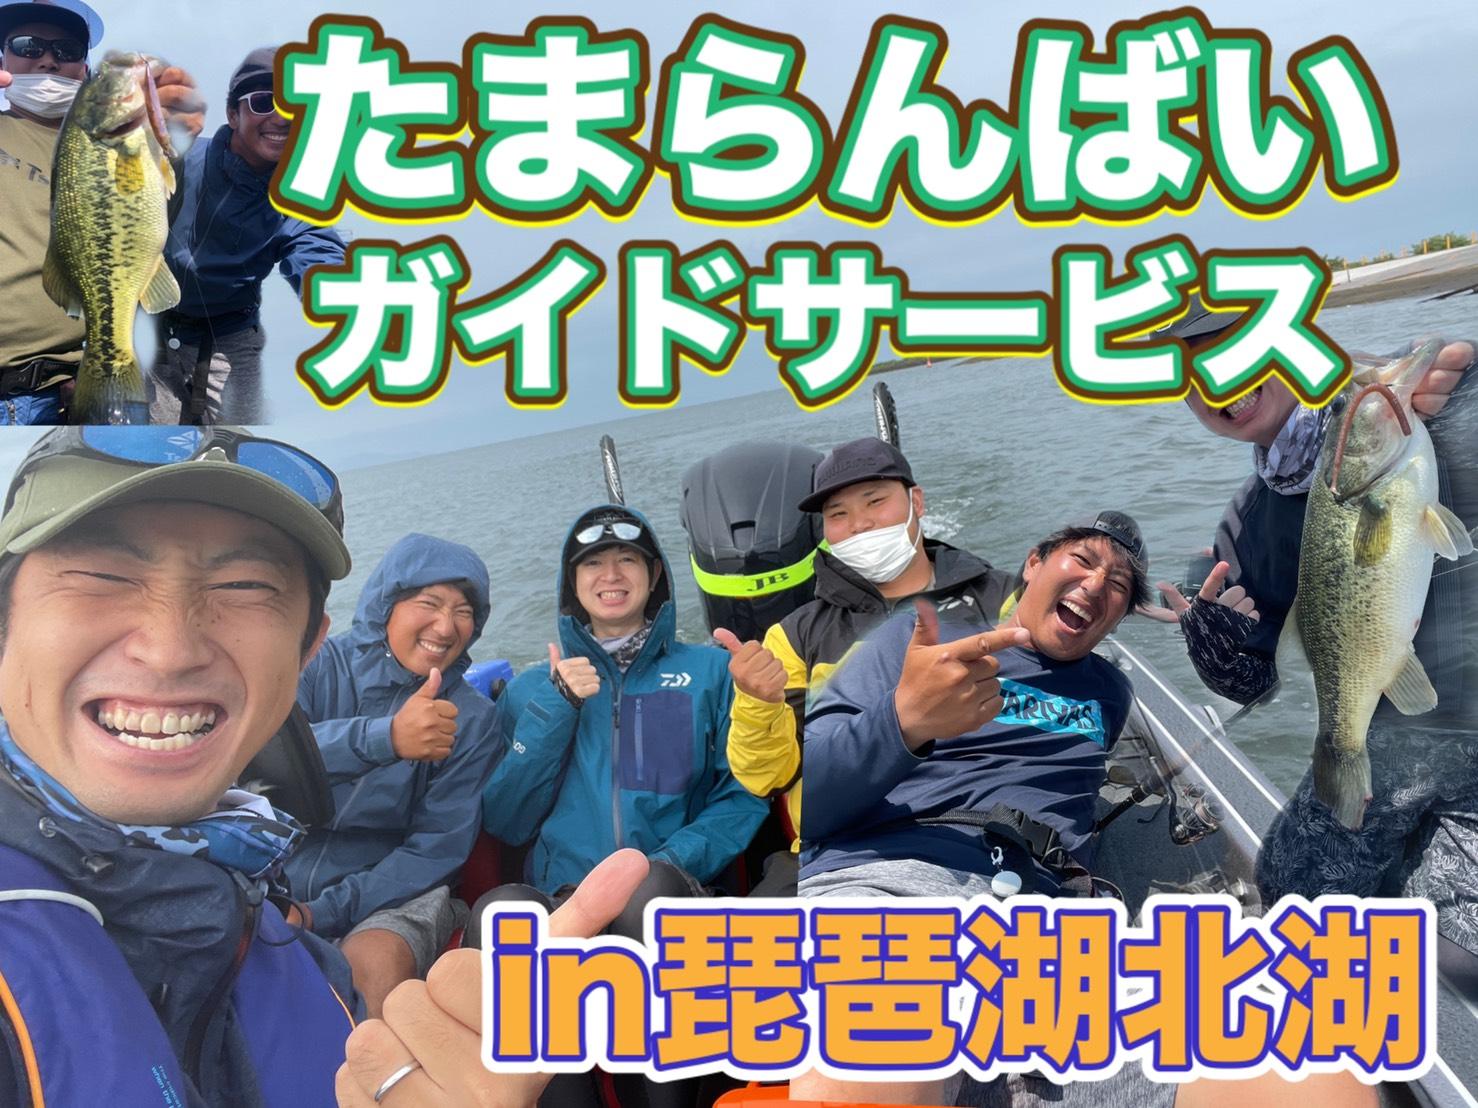 琵琶湖の超人気ガイドたまらんばい永野さんのガイドに行ってきましたワイワイしながらのエンジョイフィッシングから大物狙いの1発勝負まで一日楽しませてもらいました!!